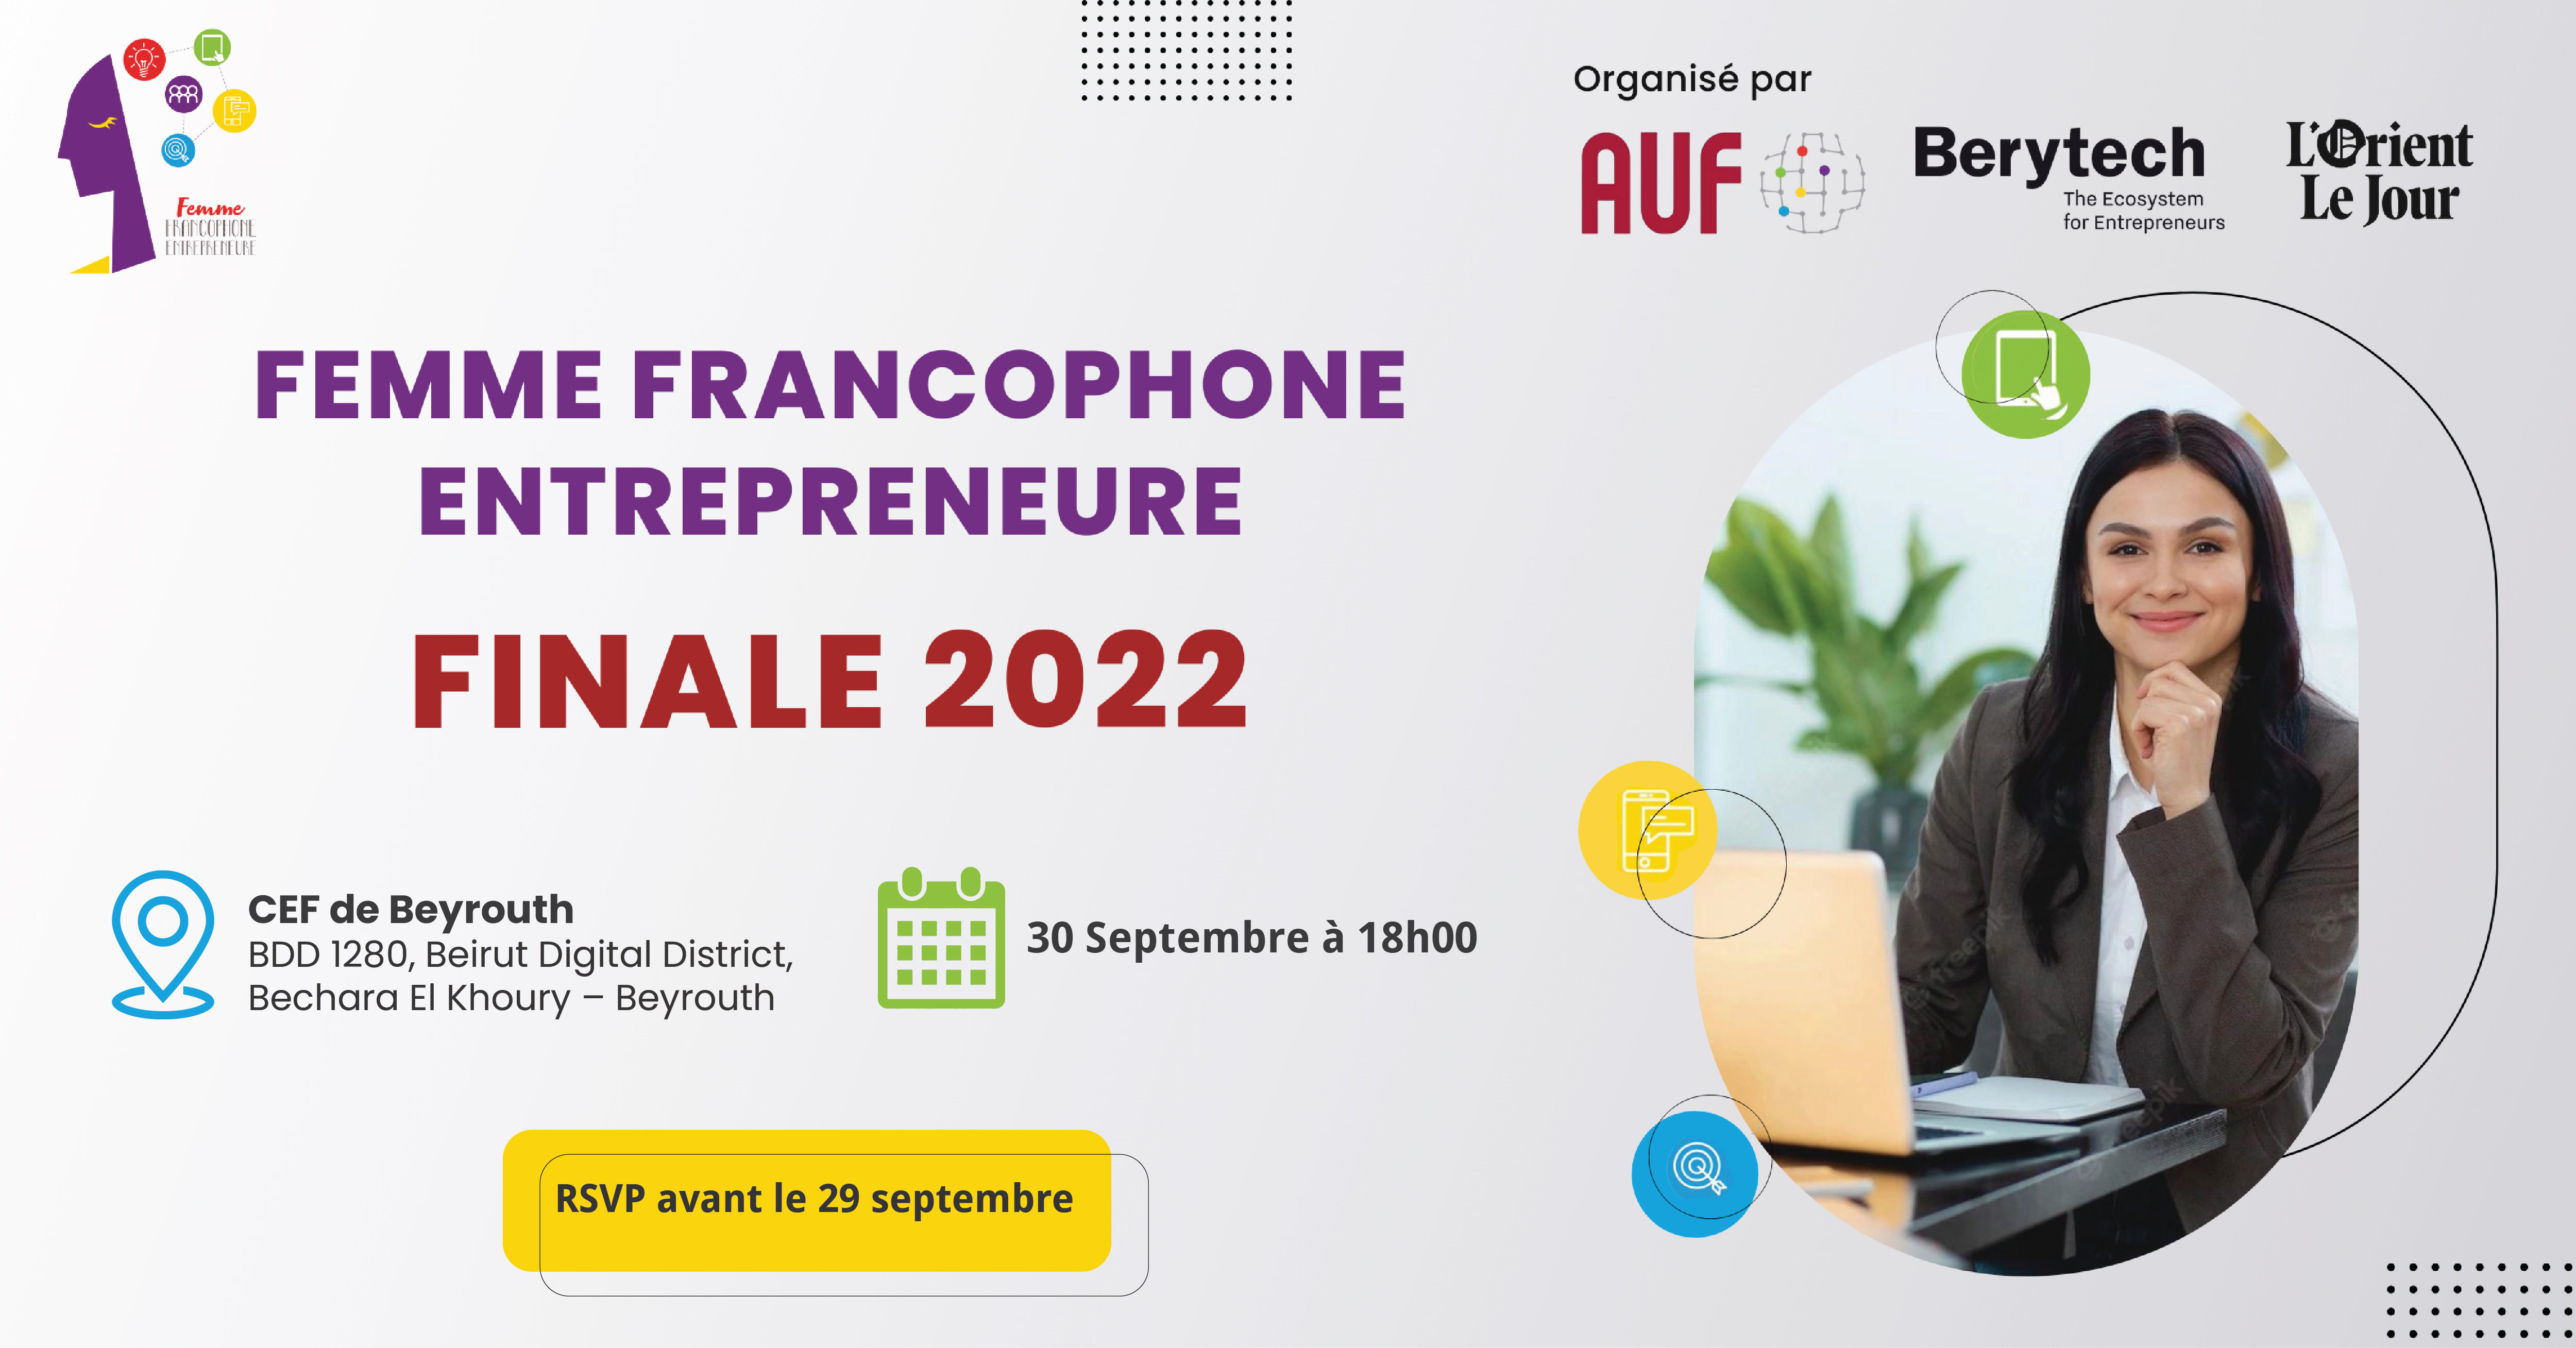 Femme Francophone Entrepreneure finale 2022 Format large